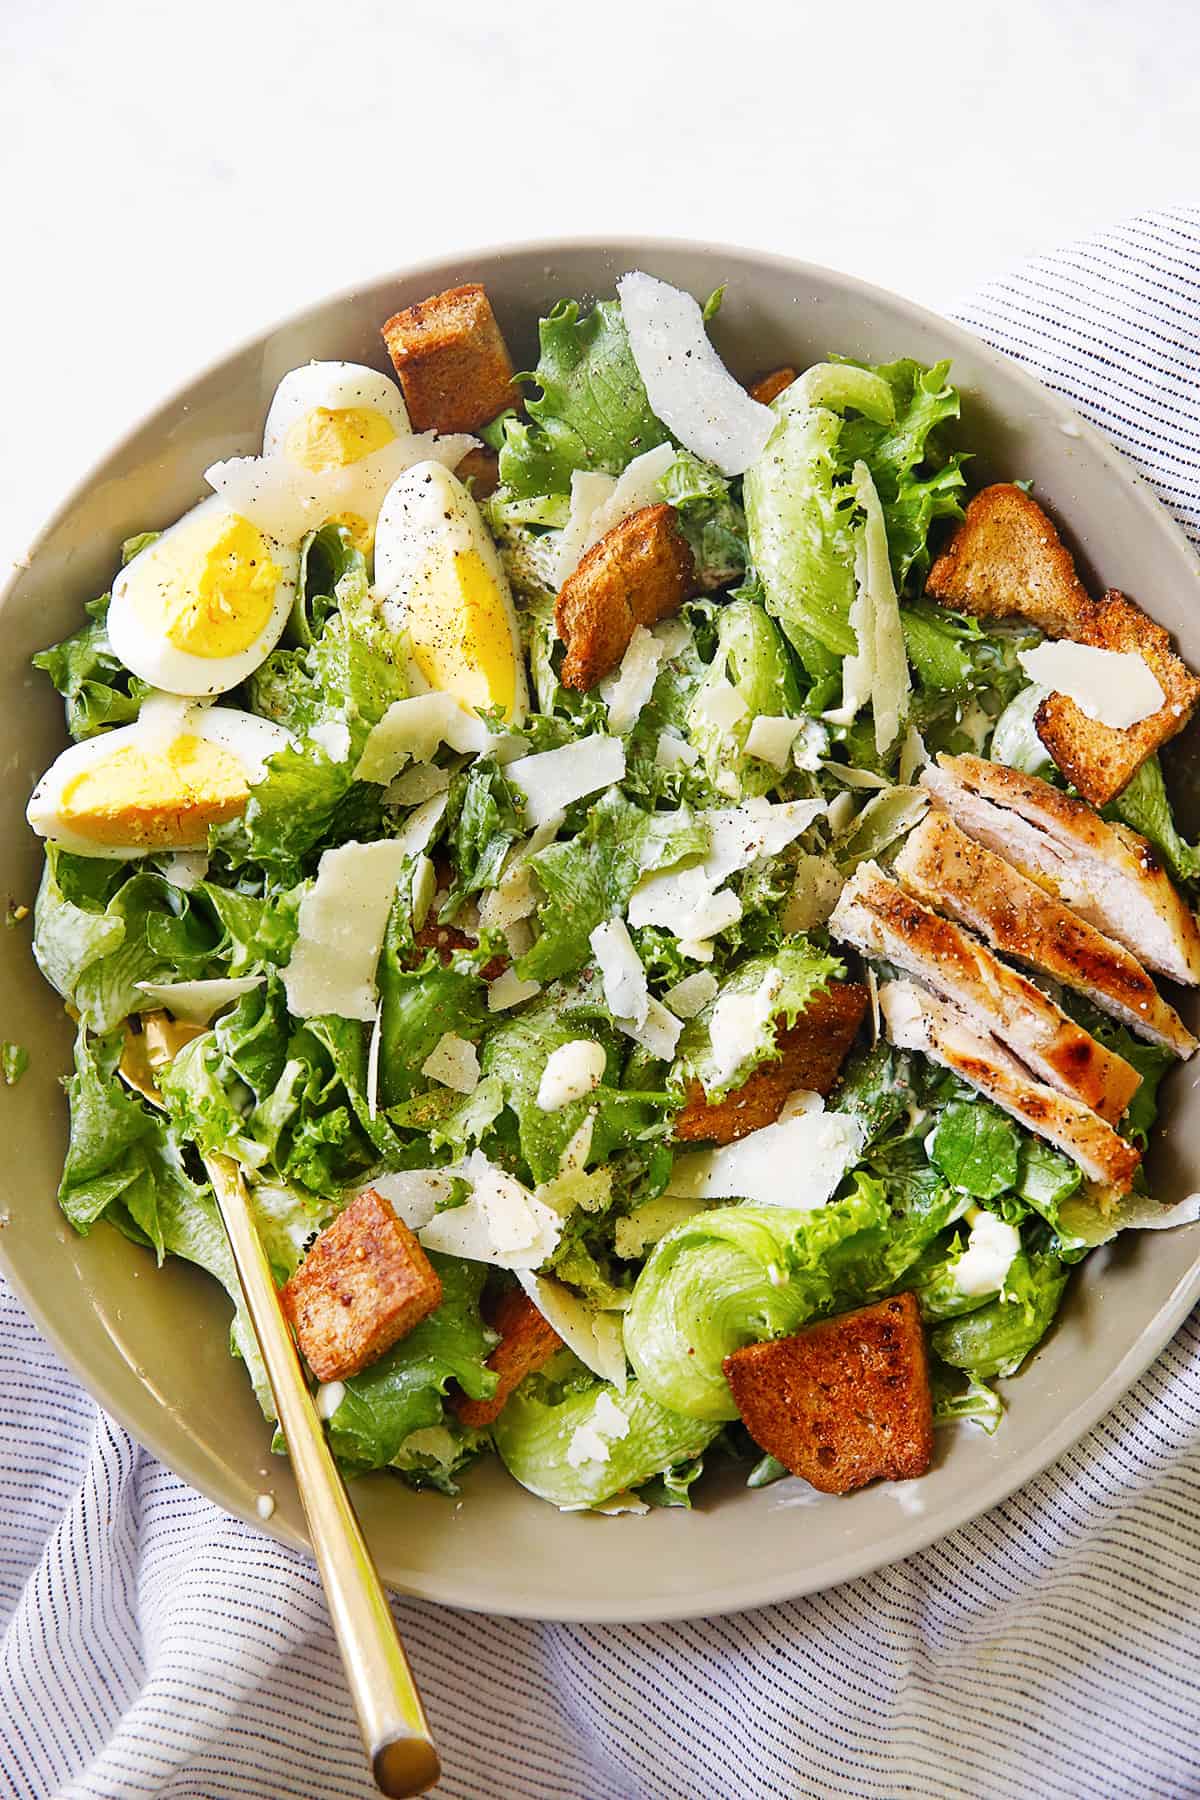 Caesar Salad Ingredients